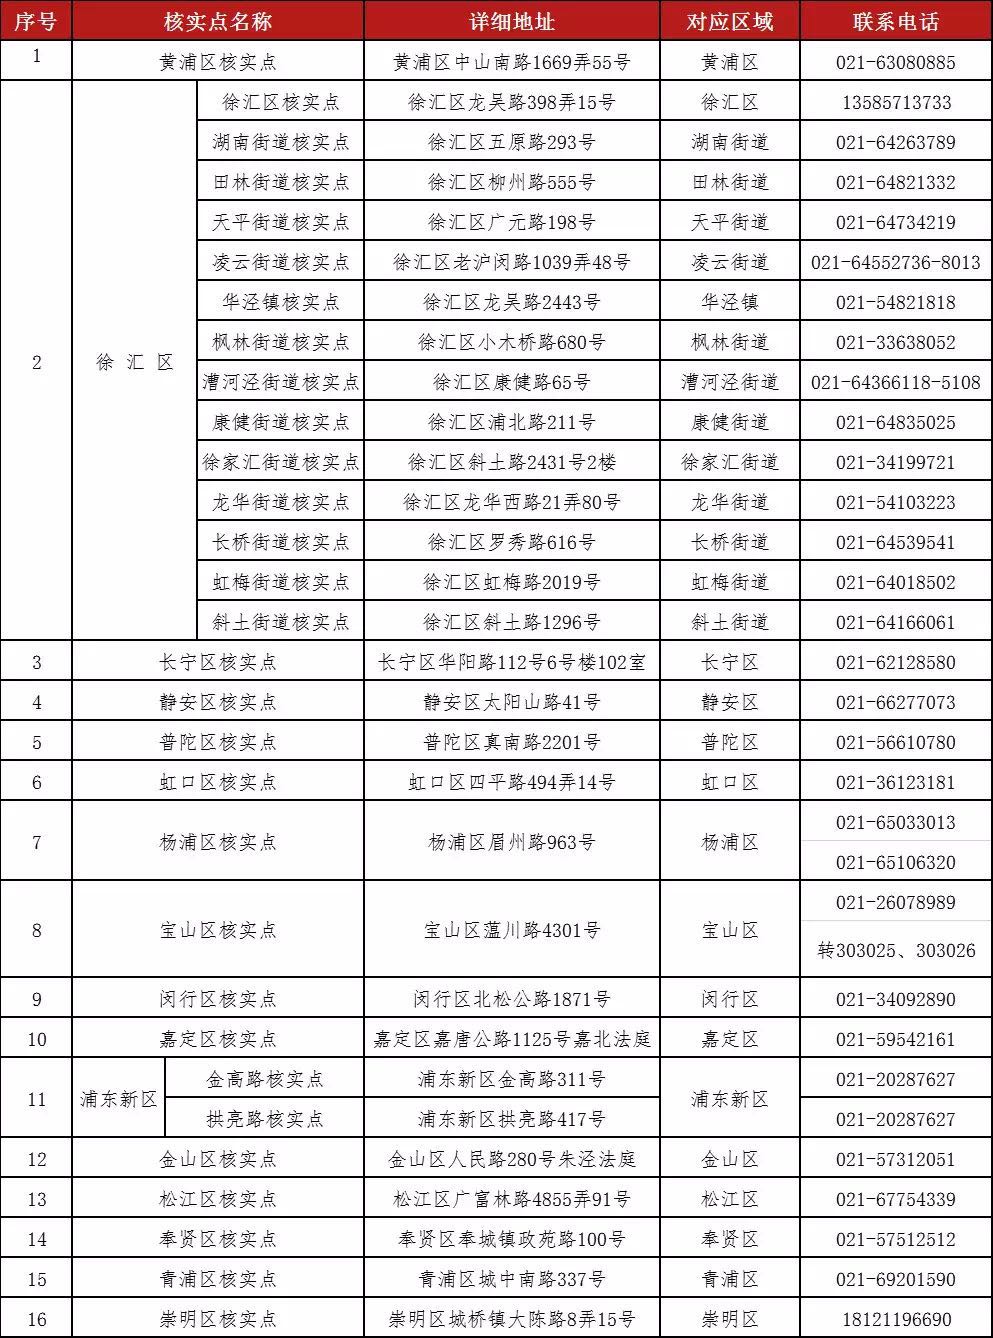 上海公布30个“e租宝”案集资参与人核实登记点地址及电话